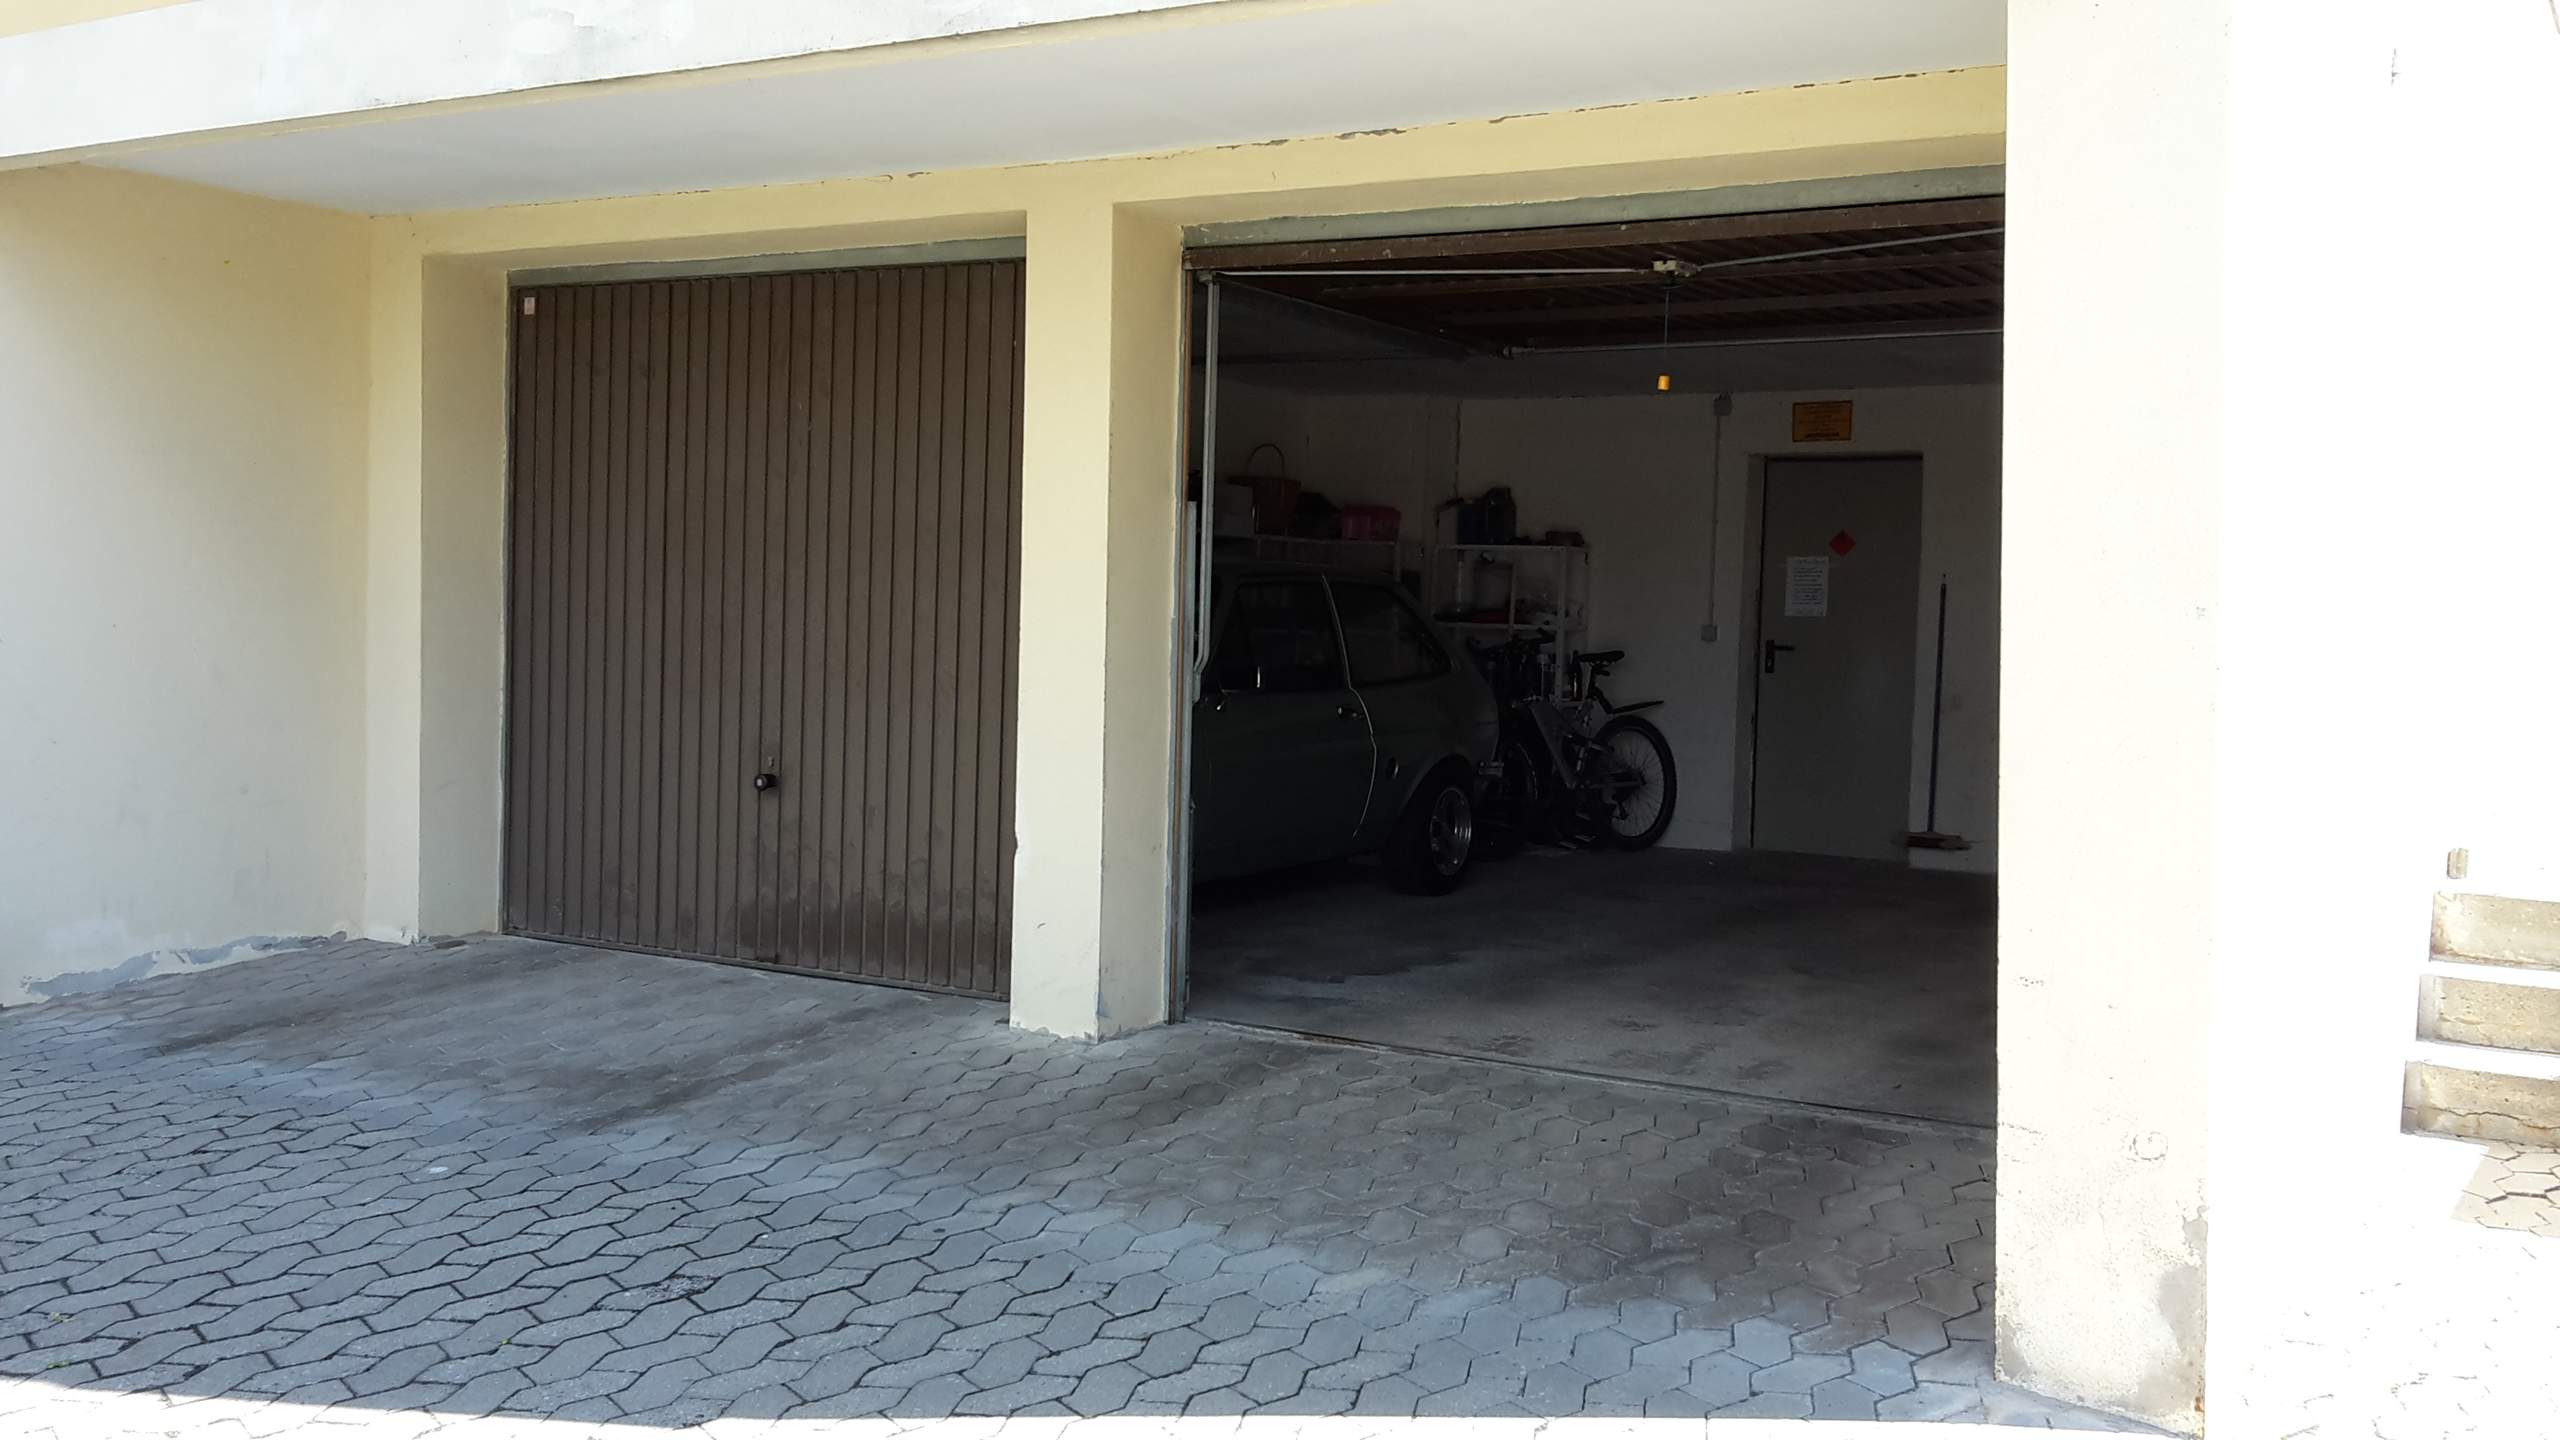 Garage an Garage mit Nachbar, Dach ohne Trennung. Wie soll Neu gedeckt  werden wenn der Nachbar nicht mitmacht? (Nachbarschaftsrecht)